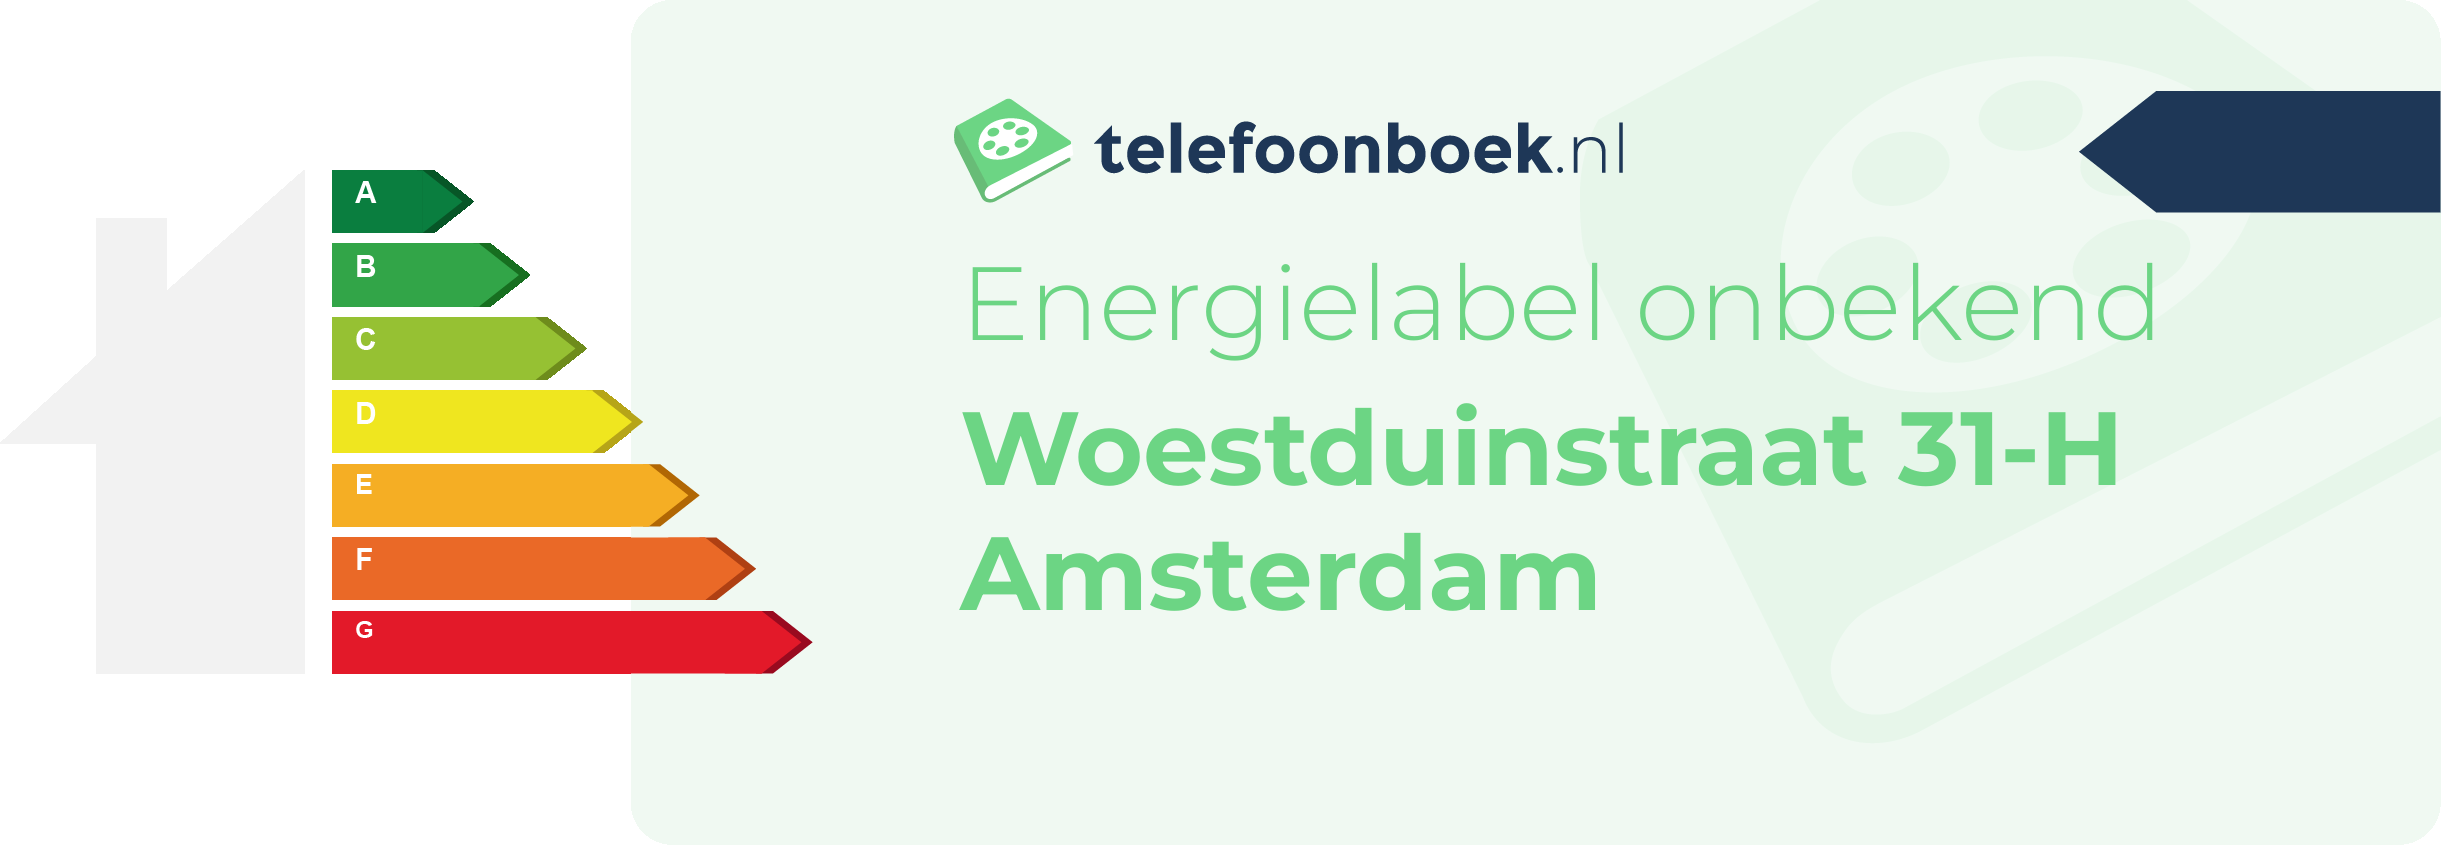 Energielabel Woestduinstraat 31-H Amsterdam